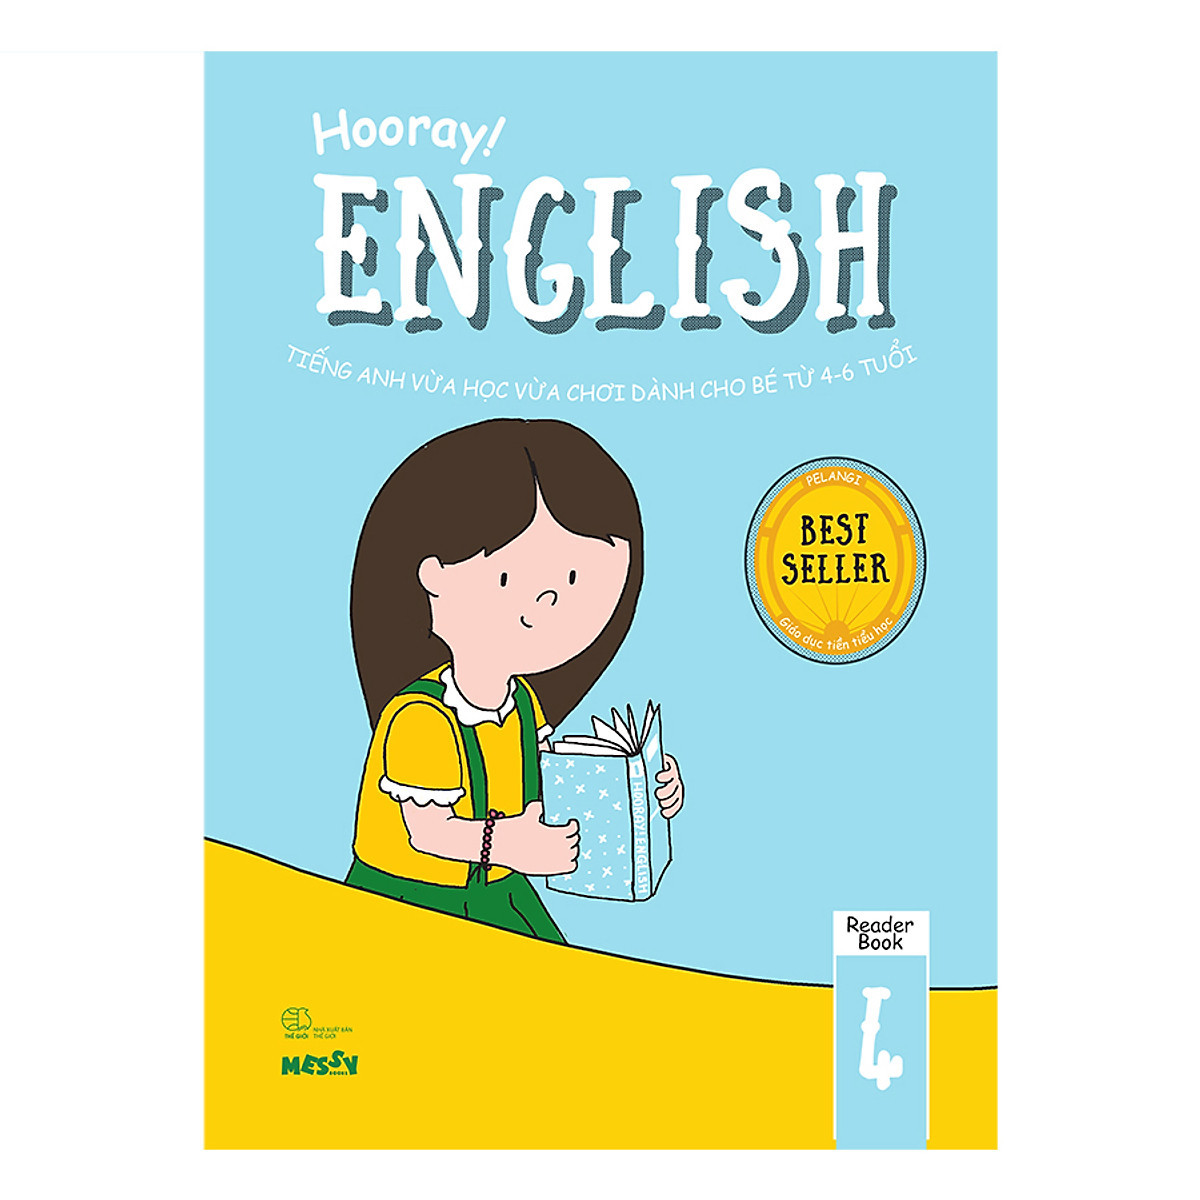 Hooray English - Tiếng Anh Vừa Học Vừa Chơi Dành Cho Bé Từ 4-6 Tuổi (Reader Books 4)